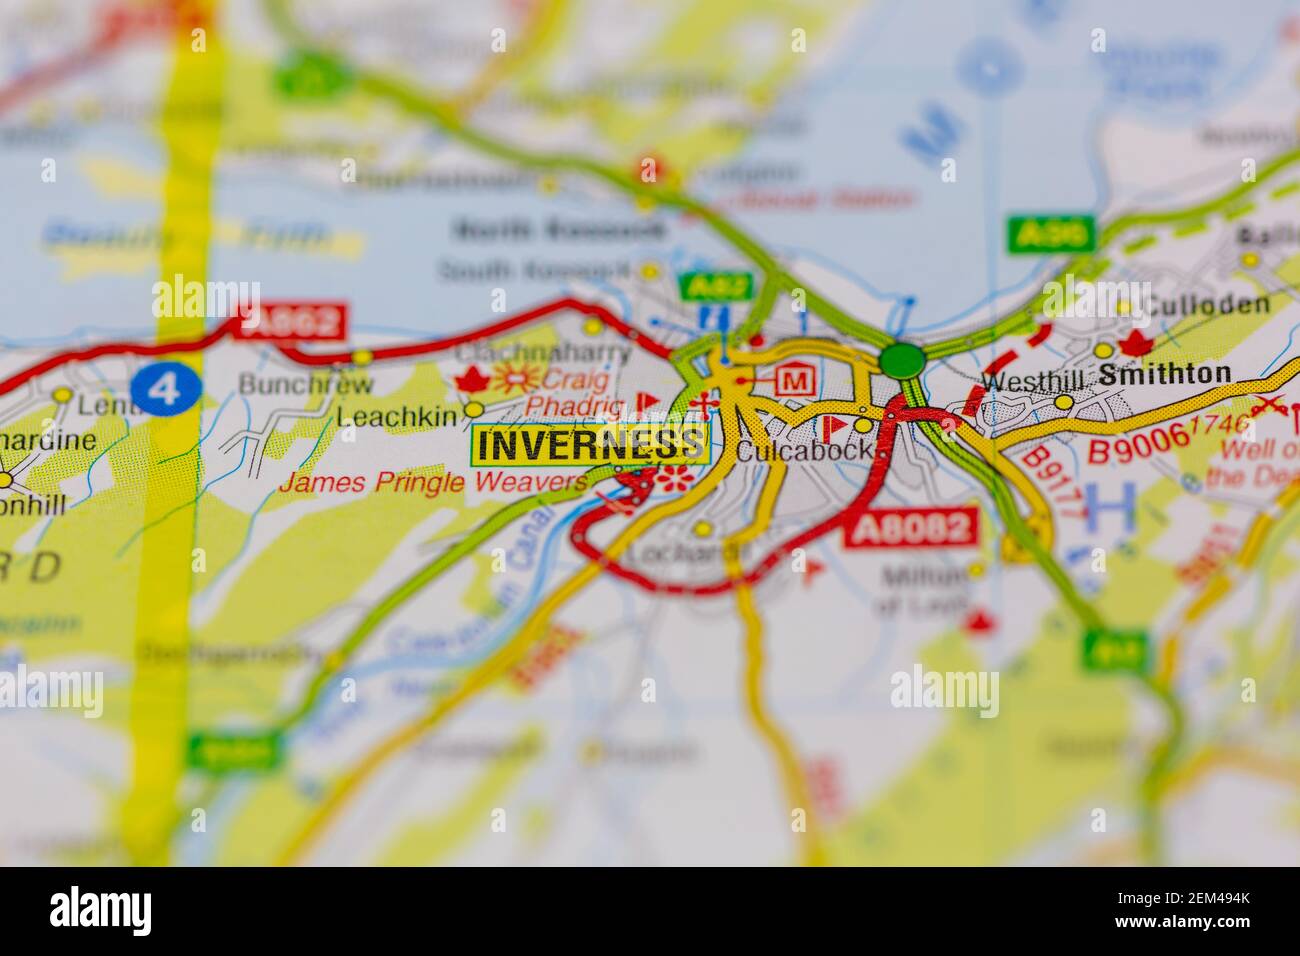 Inverness est représentée sur une carte routière ou une carte géographique Banque D'Images